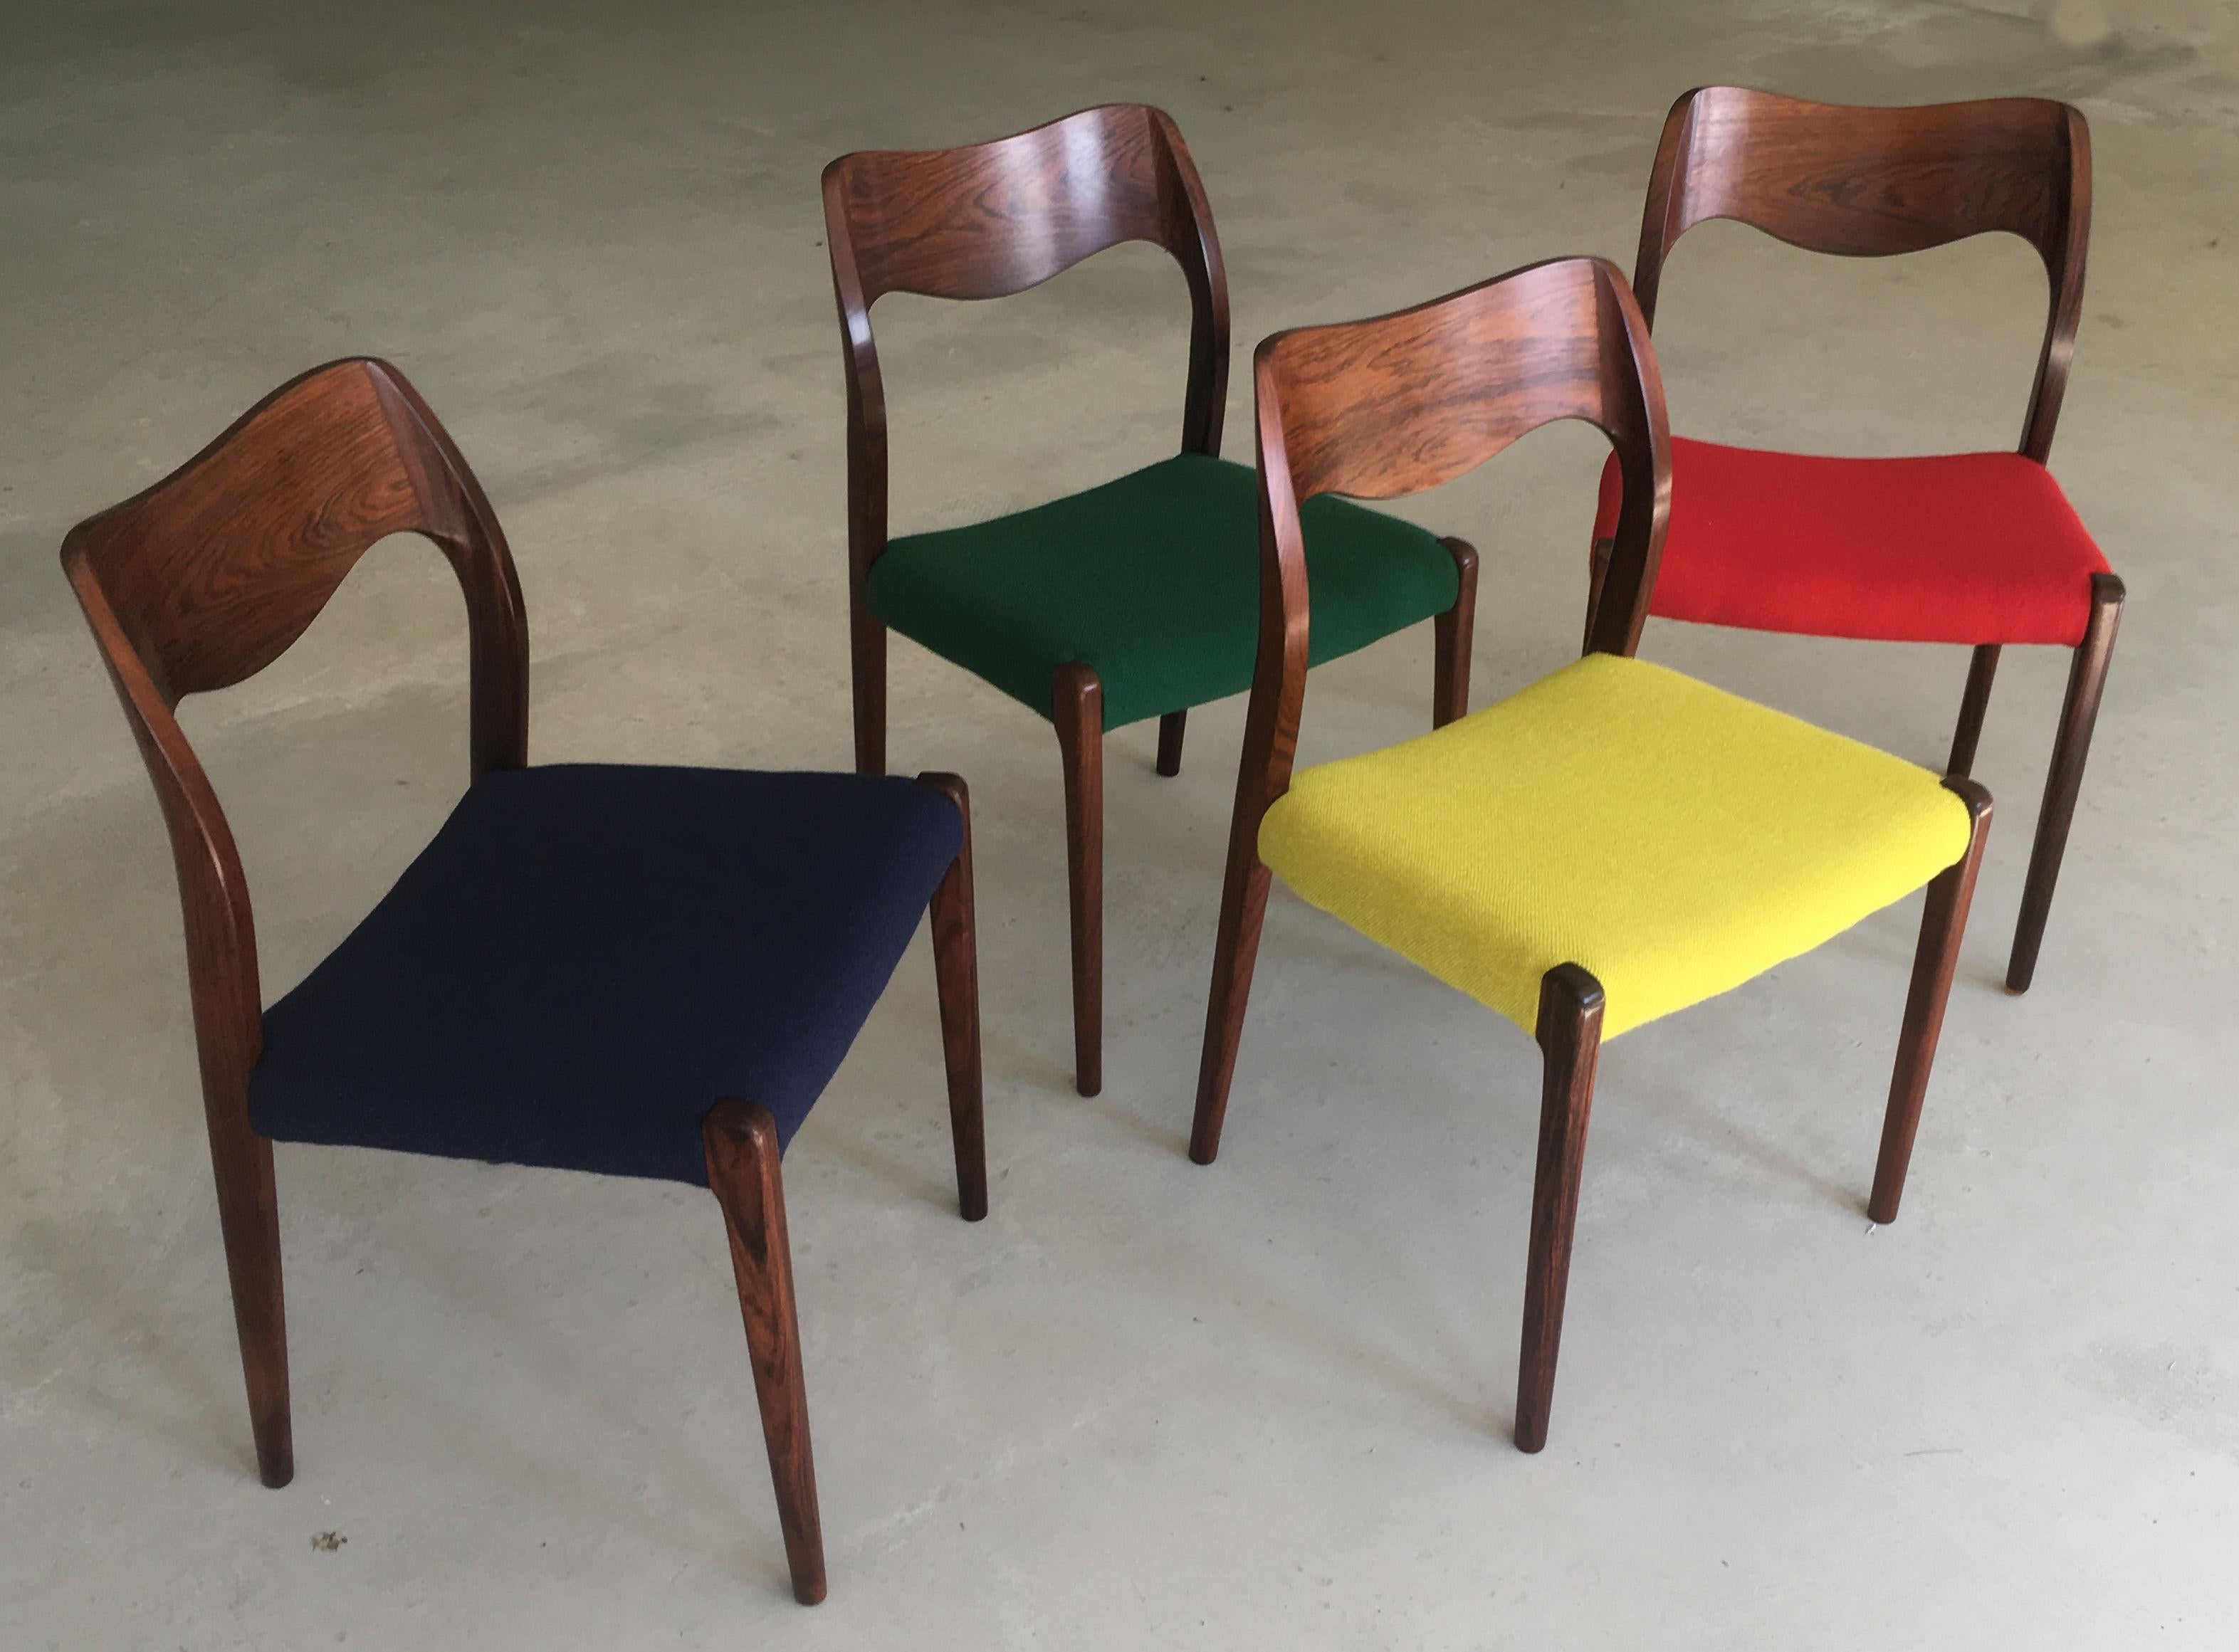 Ensemble de quatre chaises de salle à manger en bois de rose, modèle 71, entièrement restaurées, conçues par Niels Otto Møller en 1951.

Les chaises sont dotées d'un cadre et d'un dossier solides en bois de rose, avec des pieds droits et un élégant